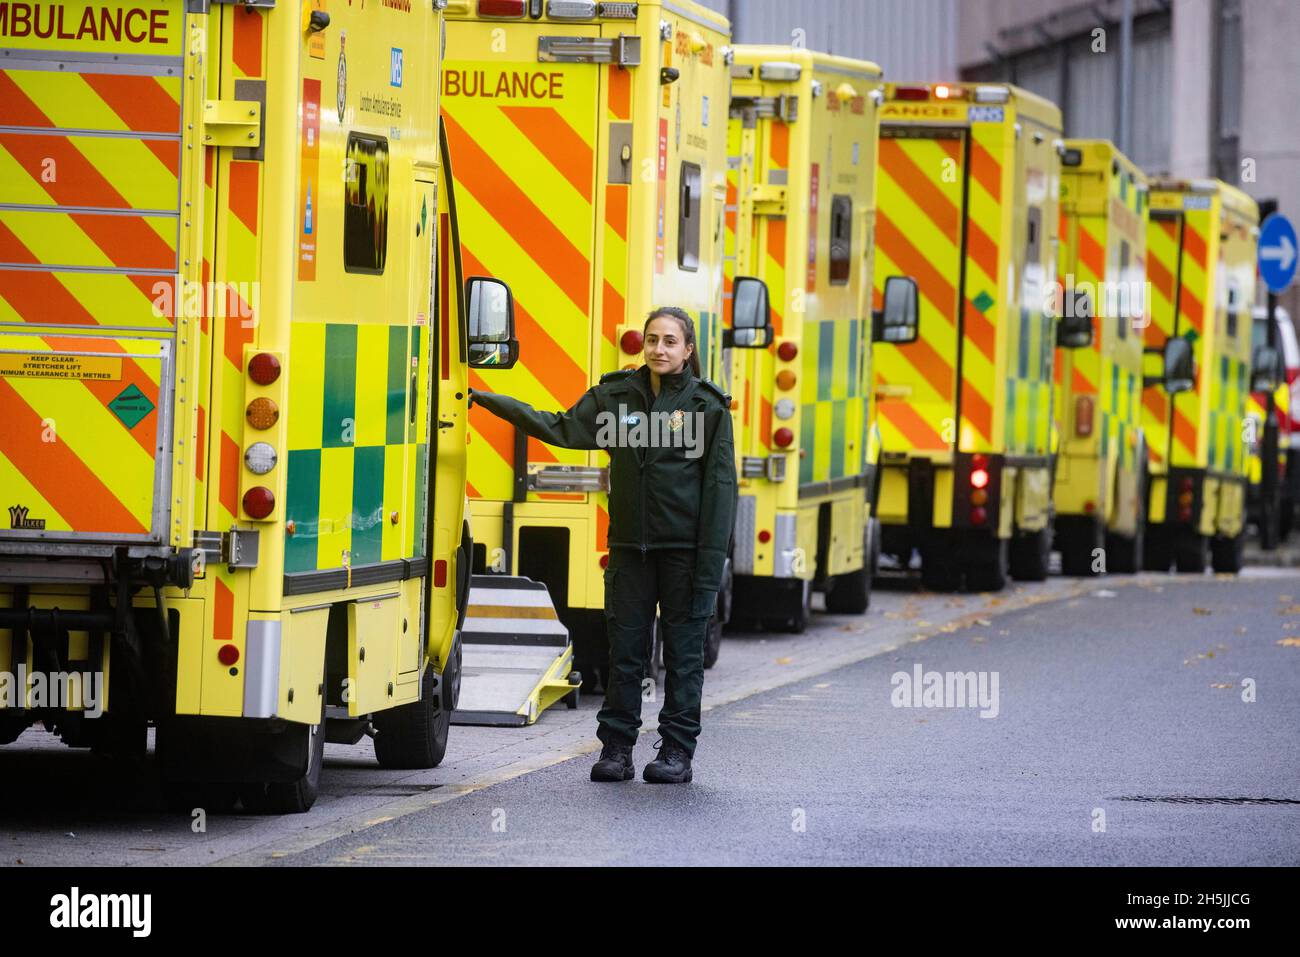 Londra, Regno Unito. 10 Ott 2021. Linee di ambulanze e personale NHS fuori dal Royal London Hospital a Whitechapel. Il Segretario della Sanità, Sajid Javid, ha annunciato il 9 novembre che le vaccinazioni di Covid saranno obbligatorie per il personale NHS. C'è la preoccupazione che l'NHS possa perdere migliaia di persone che si rifiuteranno di ottenere il vaccino. Potrebbe esserci un impatto significativo sulla forza lavoro che è già molto tesa. L'Organizzazione Mondiale della Sanità ha criticato Boris Johnson per non aver indossato una maschera in un ospedale. Credit: Mark Thomas/Alamy Live News Foto Stock